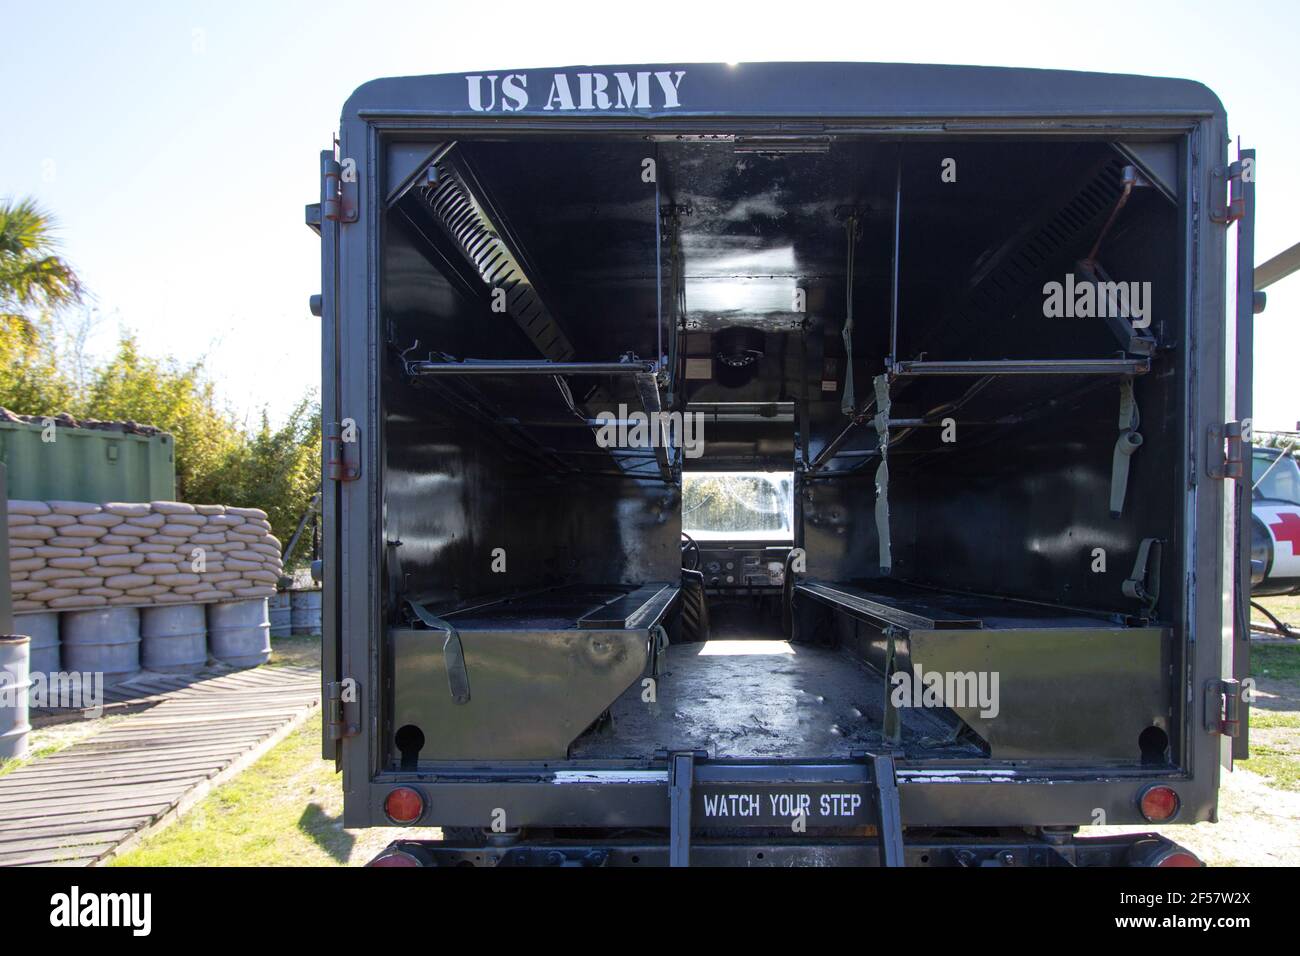 Mount Pleasant, Carolina del Sur, EE.UU.- Ambulancia del Ejército de EE.UU. En una recreación de un campamento de guerra de Vietnam dedicado a soldados de Vietnam americano en Patriots Point Foto de stock